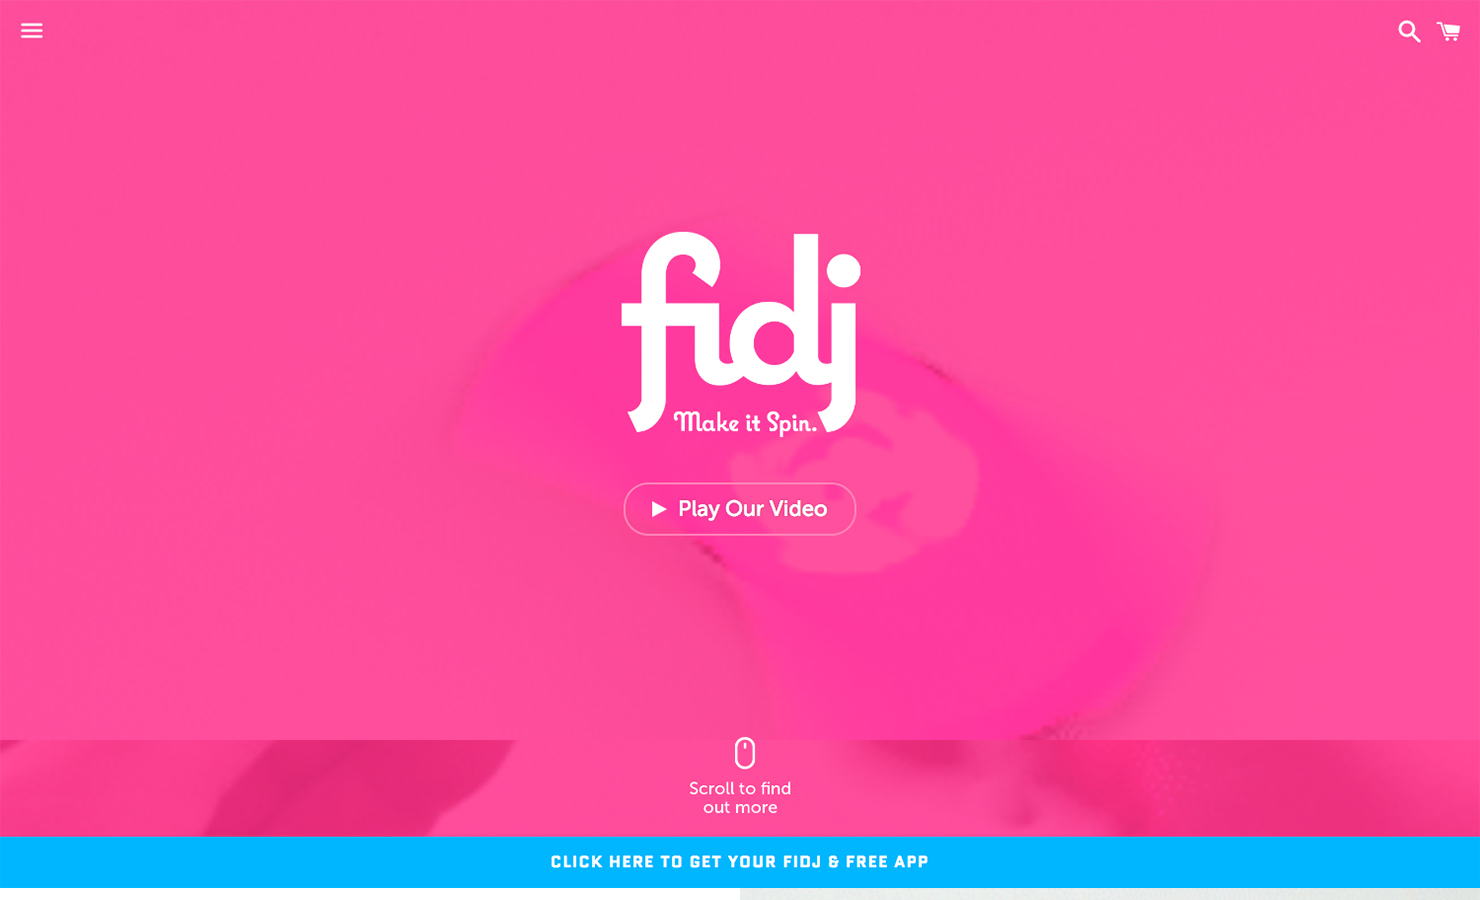 The Fidj